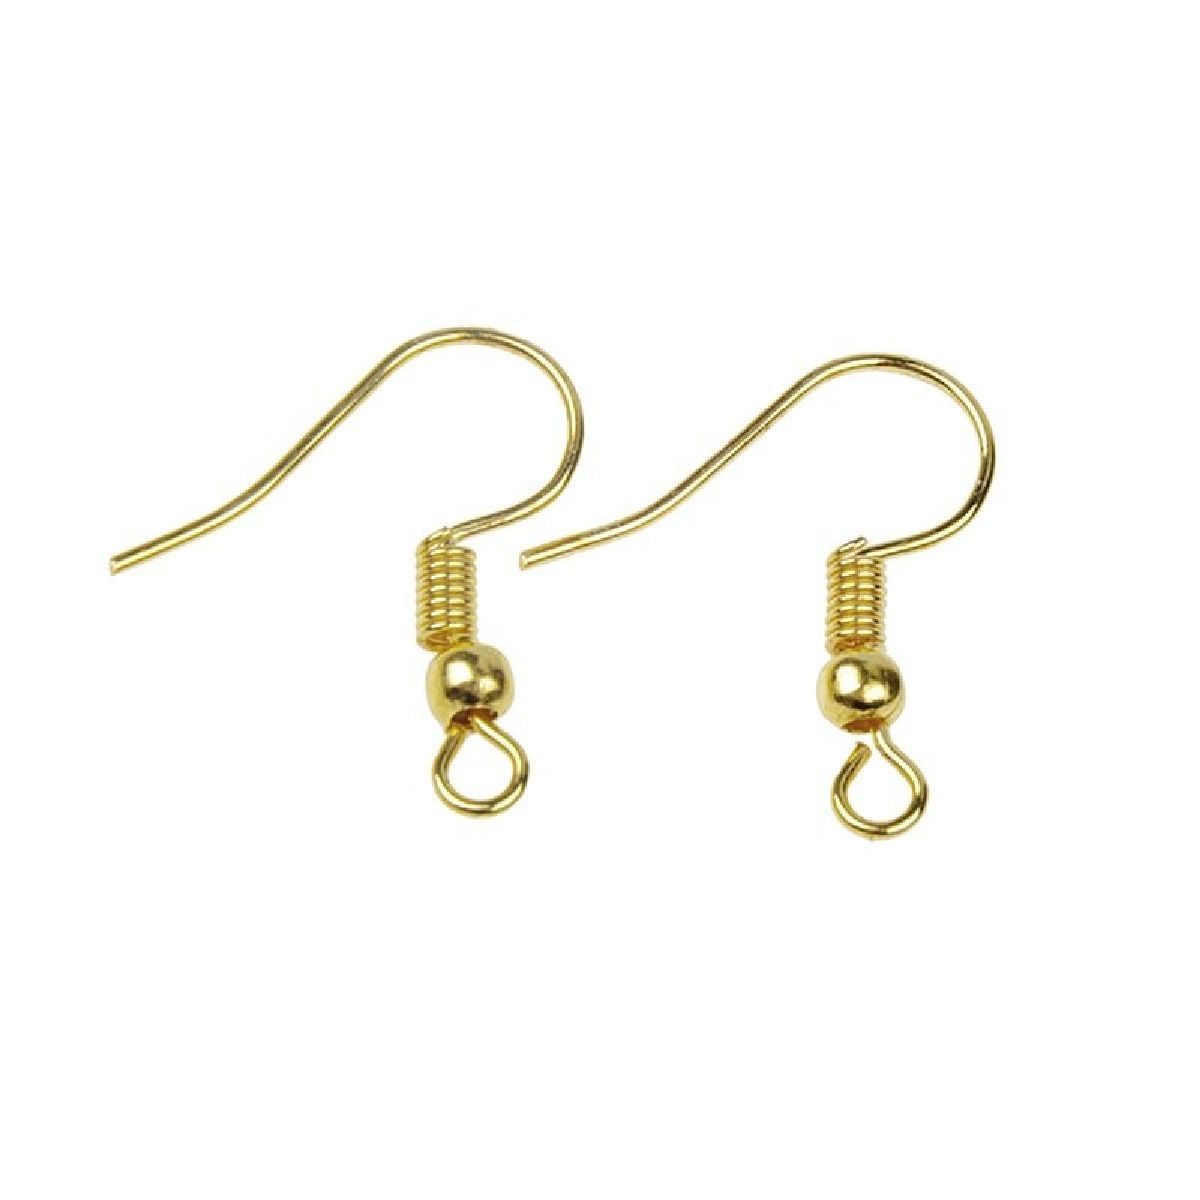 Premier Designs Jewelry FIRESIDE Fish Hook Earrings FREE SHIPPING! 